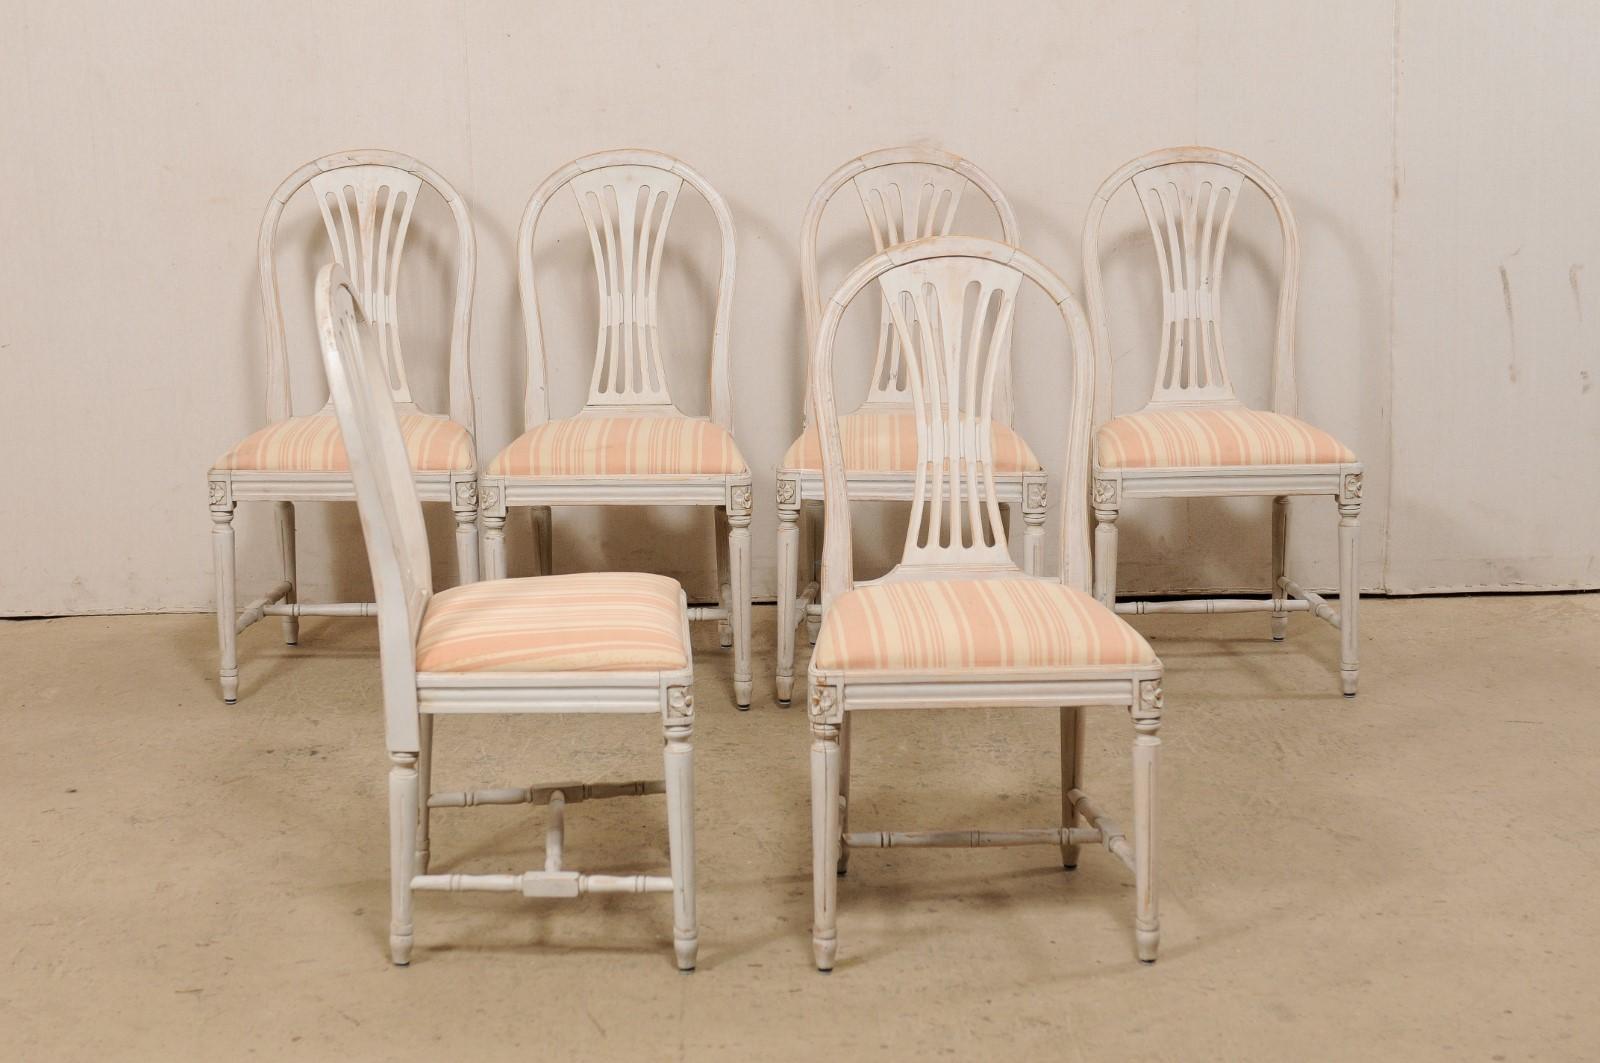 Schwedischer Satz von sechs geschnitzten Holzstühlen mit gepolsterten Sitzen, ca. 1960er Jahre. Dieses Set von Vintage-Stühlen aus Schweden zeichnet sich durch anmutig runde Stuhllehnen mit durchbrochenen Rückenlehnen aus, durch geformte Schürzen